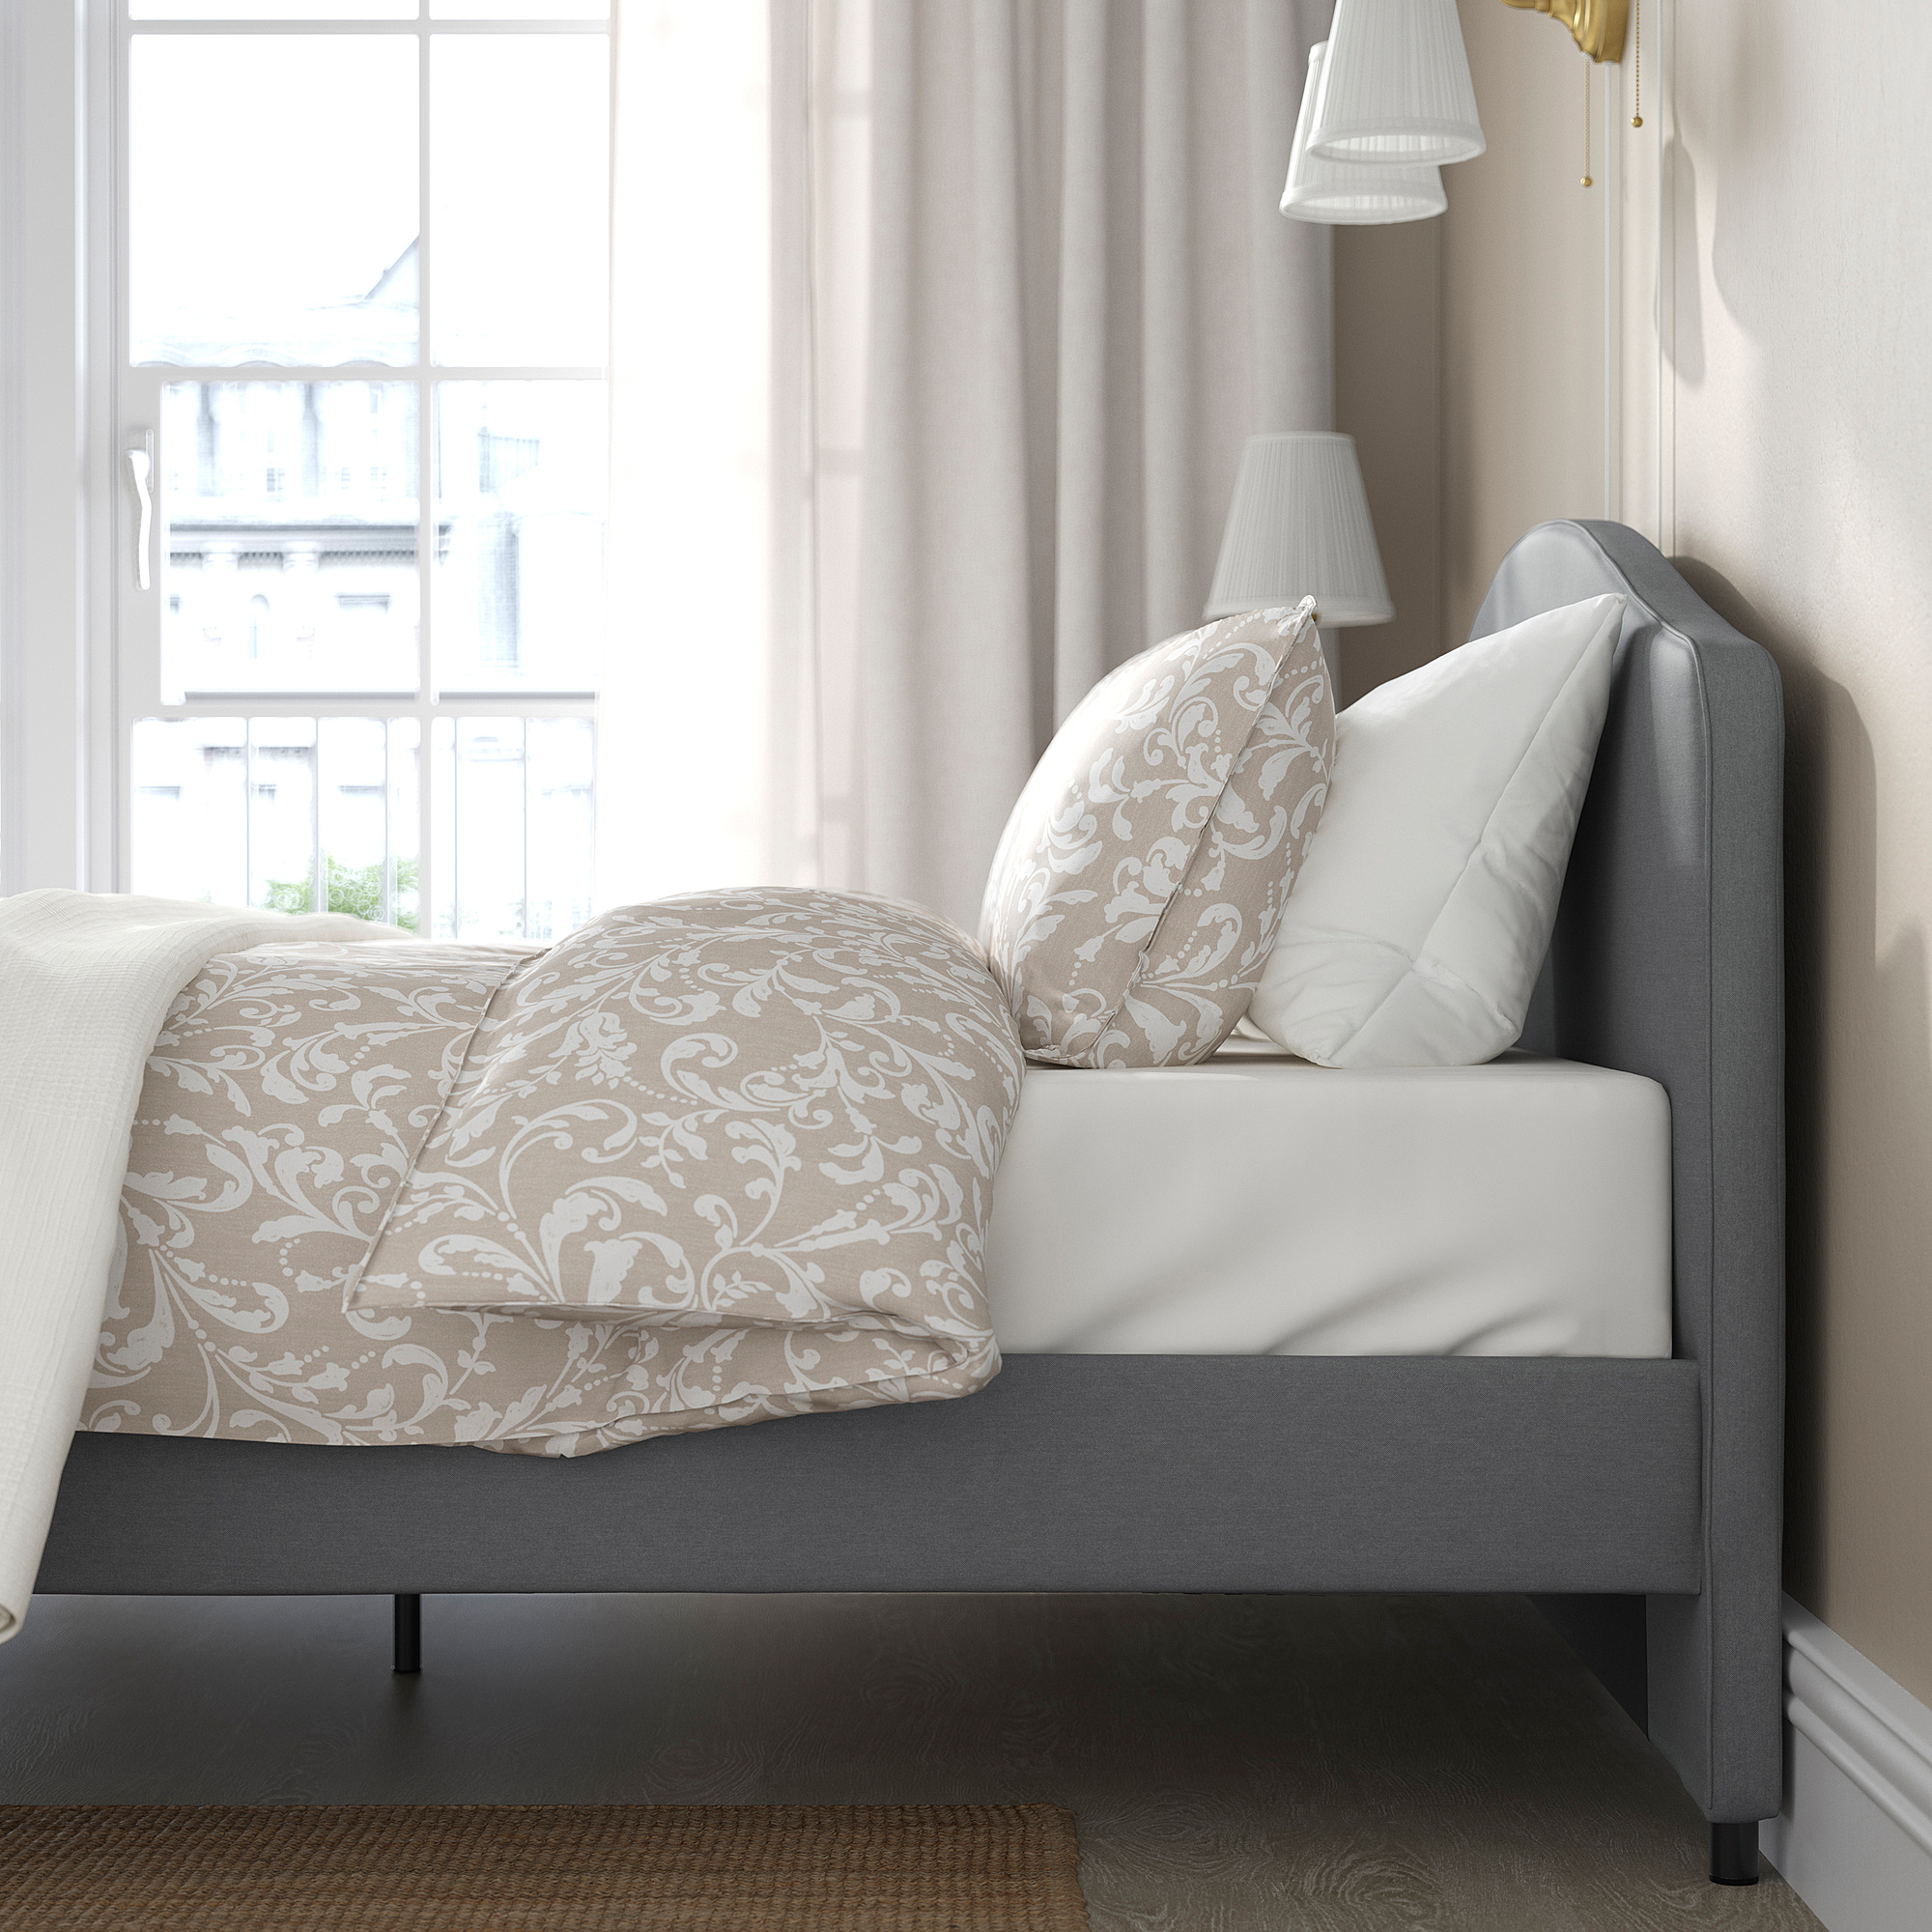 HAUGA upholstered bed frame